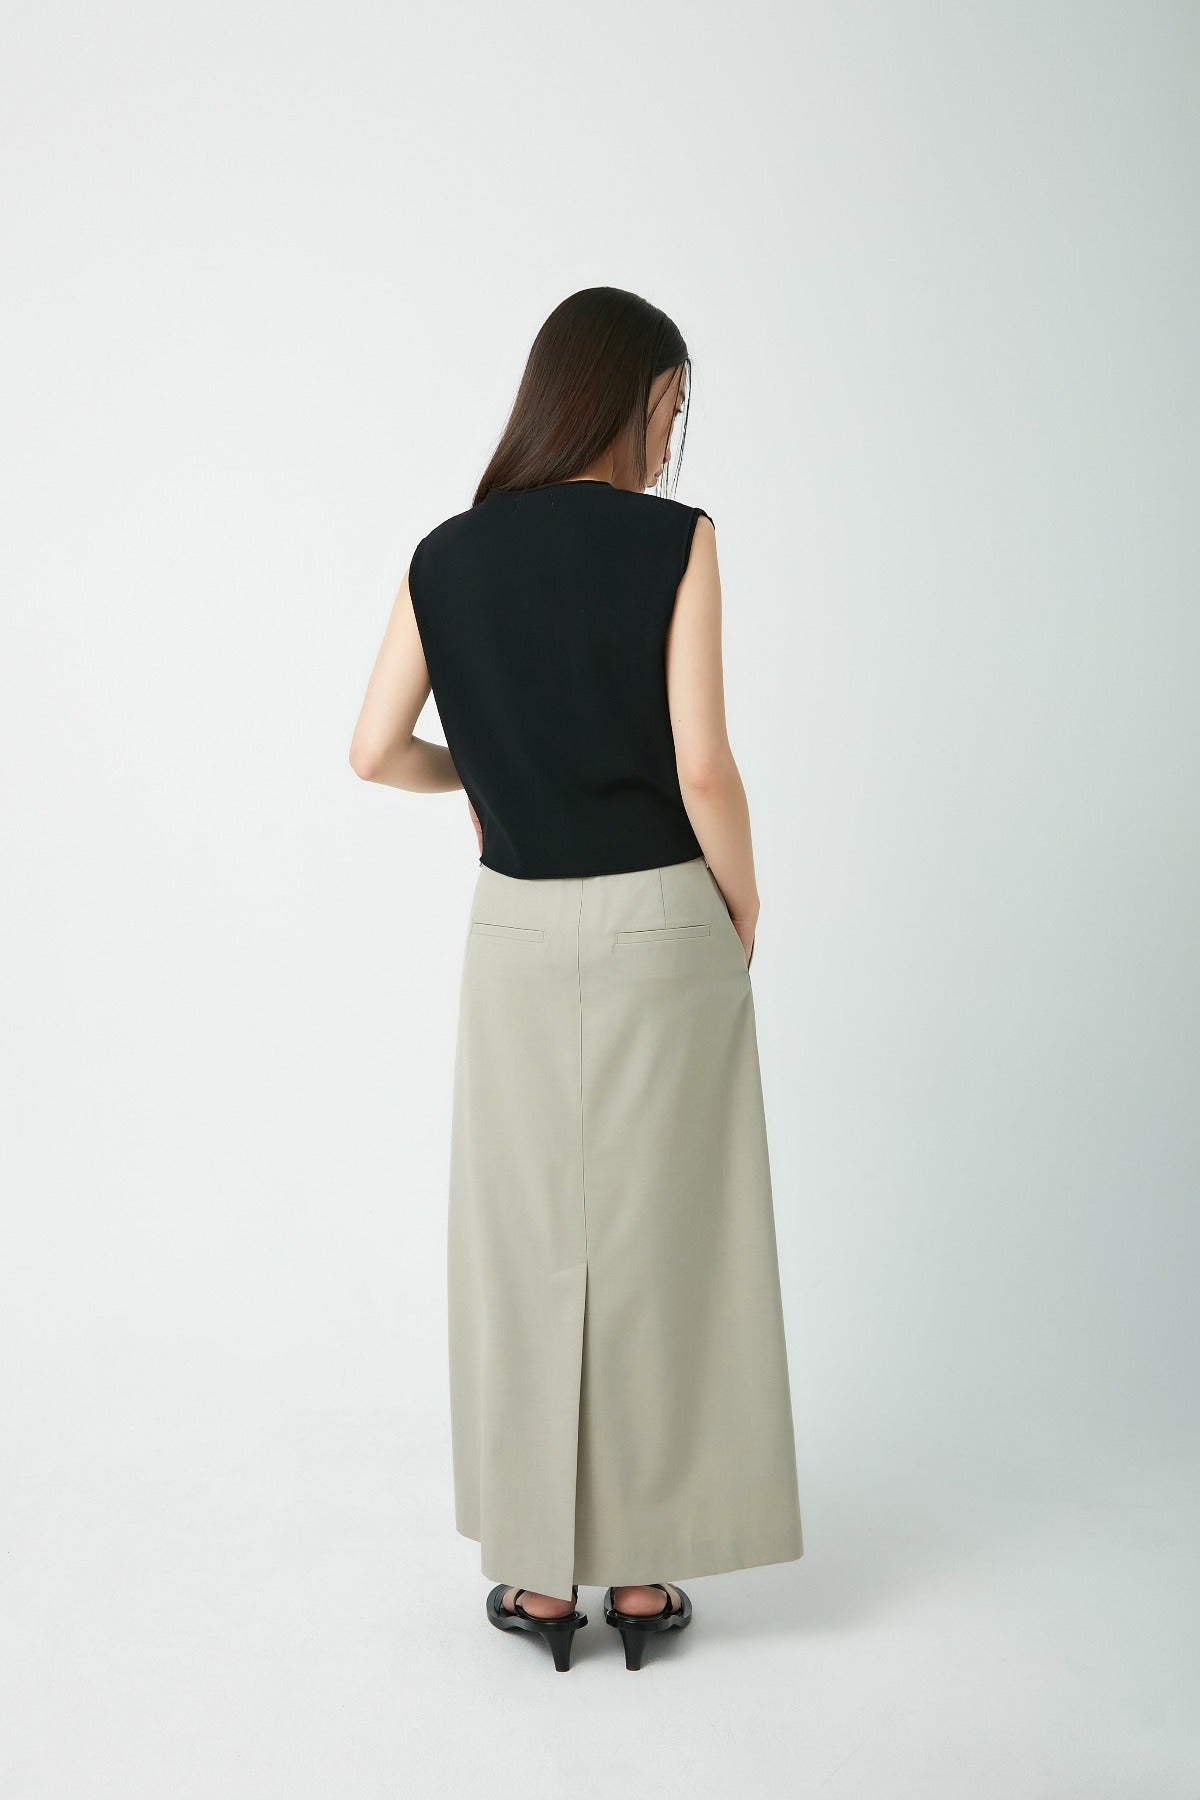 Long Slit Skirt In Greyish Olive